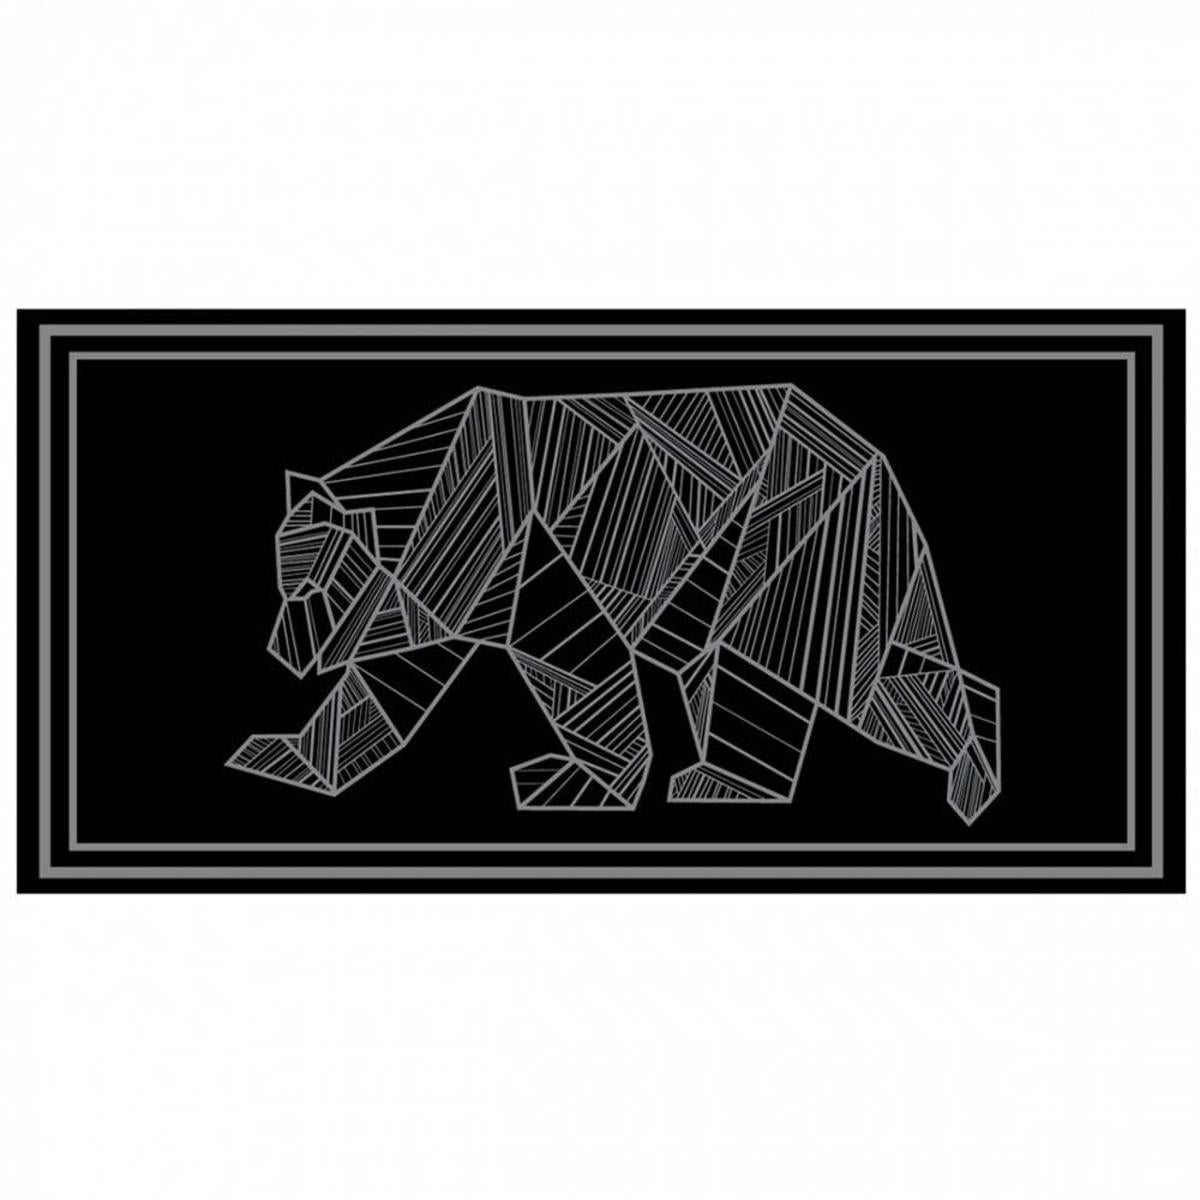 Kuma Outdoor Gear 9120.0484 18 x 9 ft. Bear Outdoor Mat Gray & Black